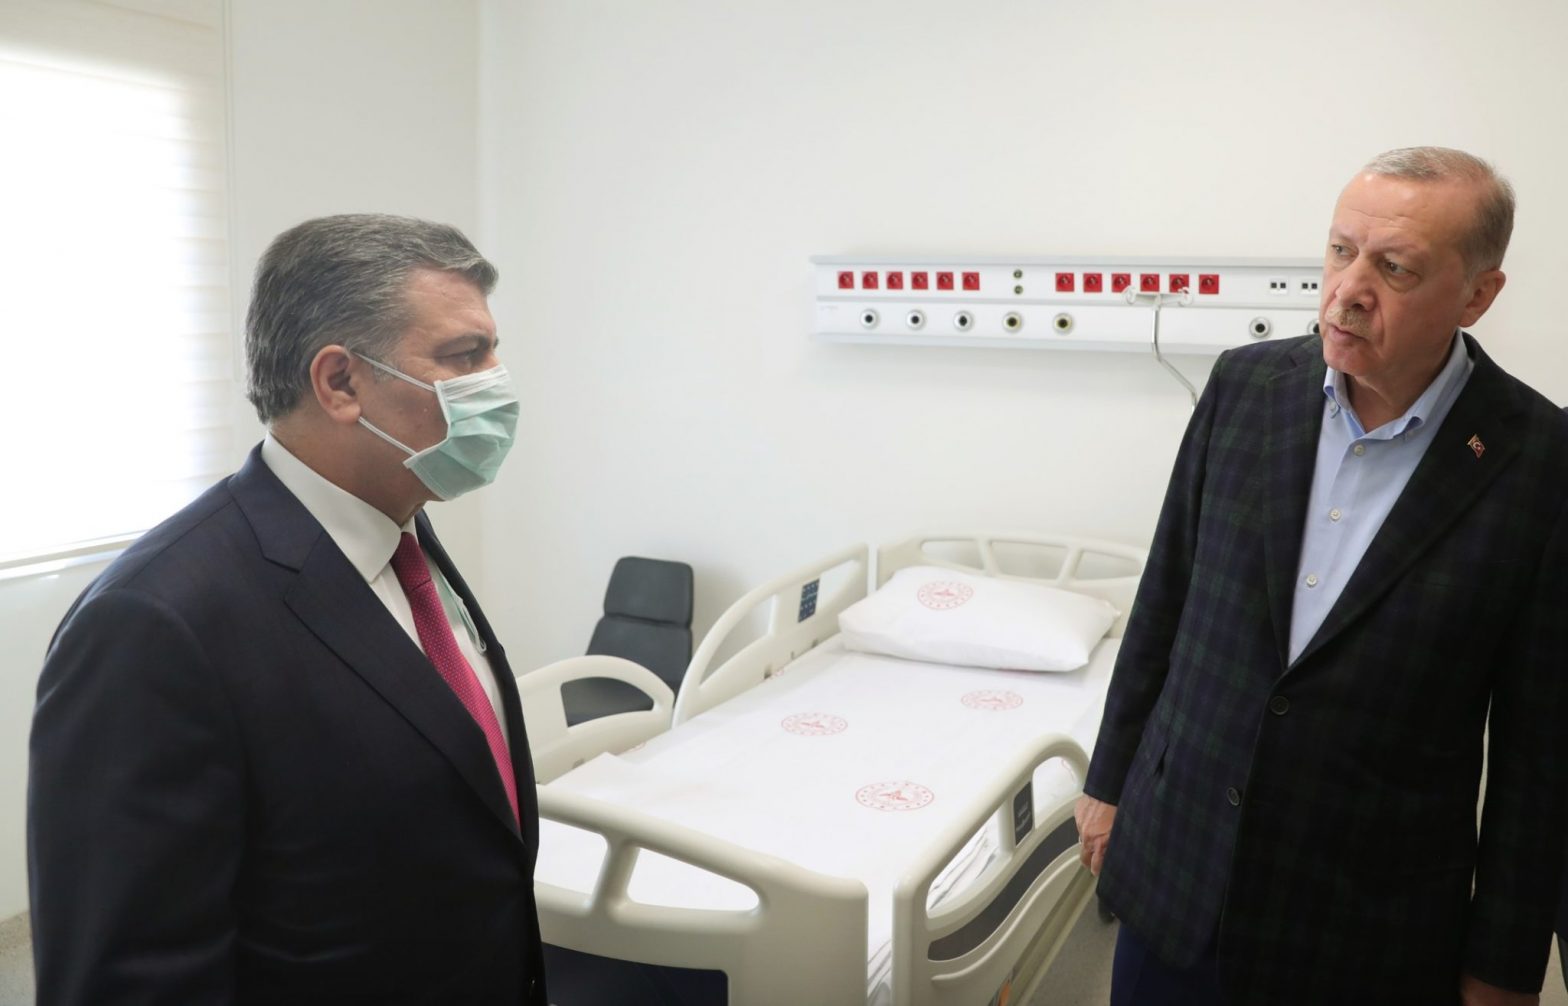 ترک صدر عارضہ قلب میں مبتلا،علاج کے لیے اسرائیلی ڈاکٹر سے رجوع